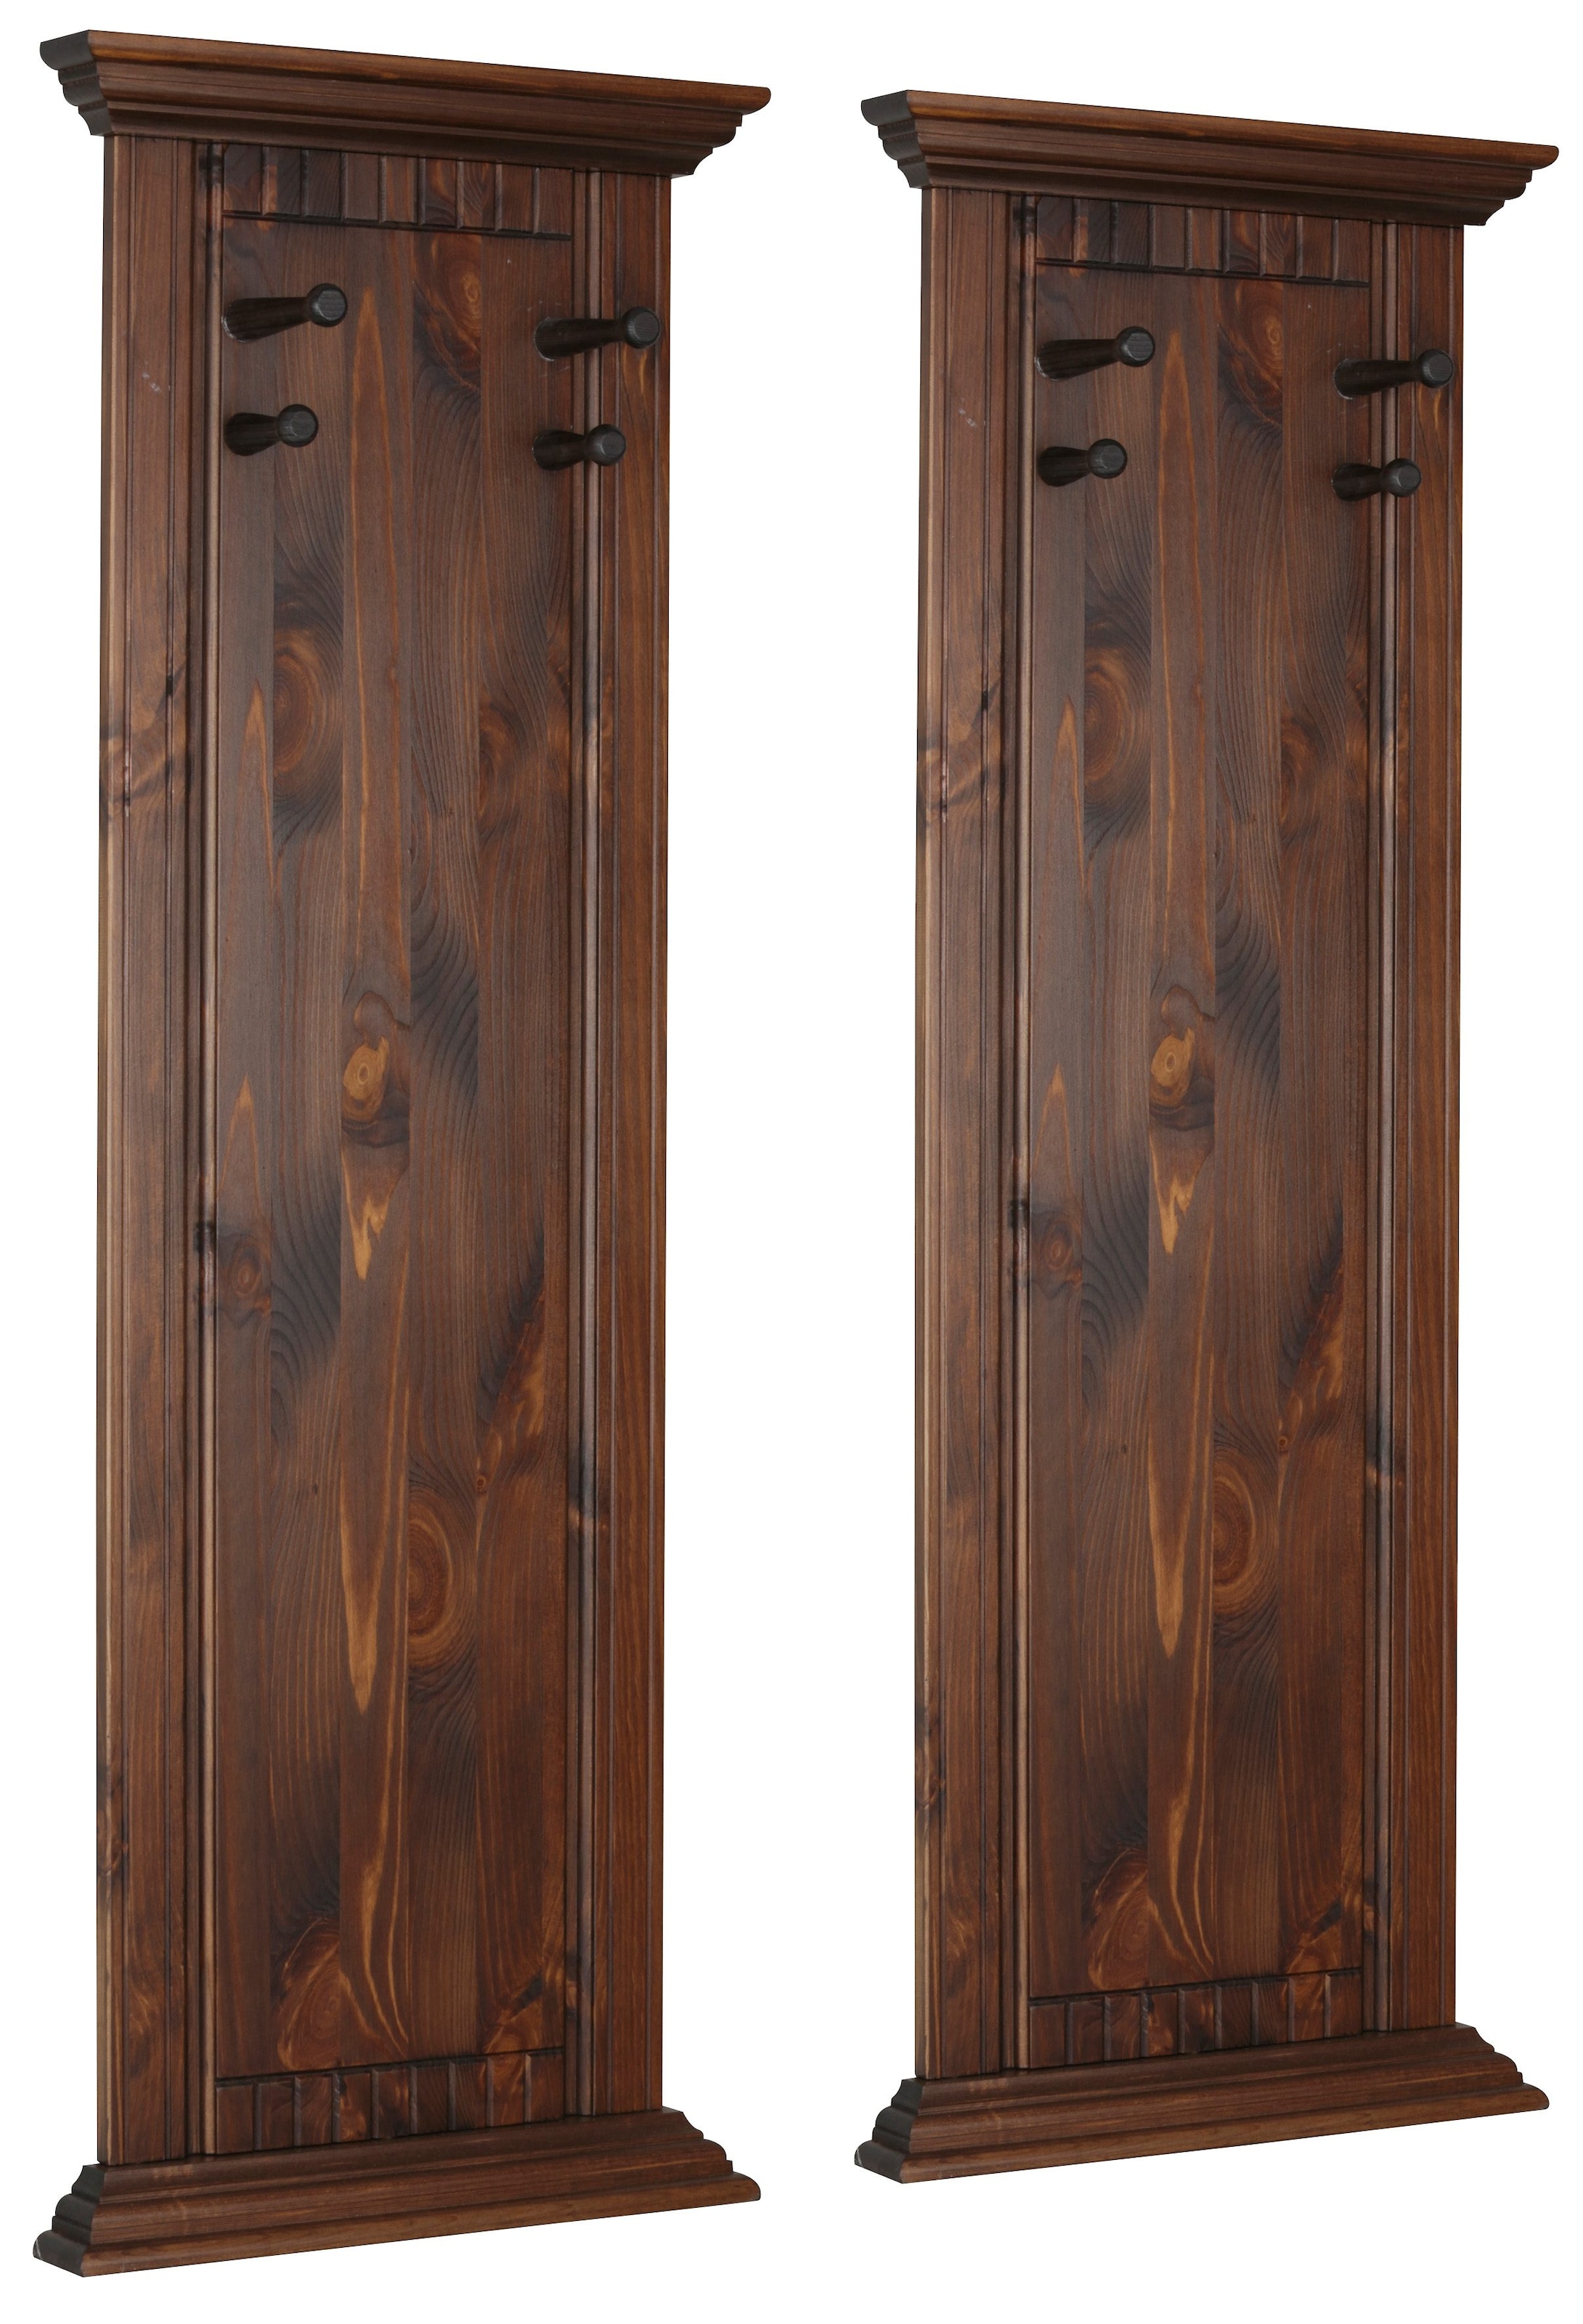 Garderobenpaneel »Rustic«, (2 Stück), aus massiver Kiefer, mit dekorativen Fräsungen